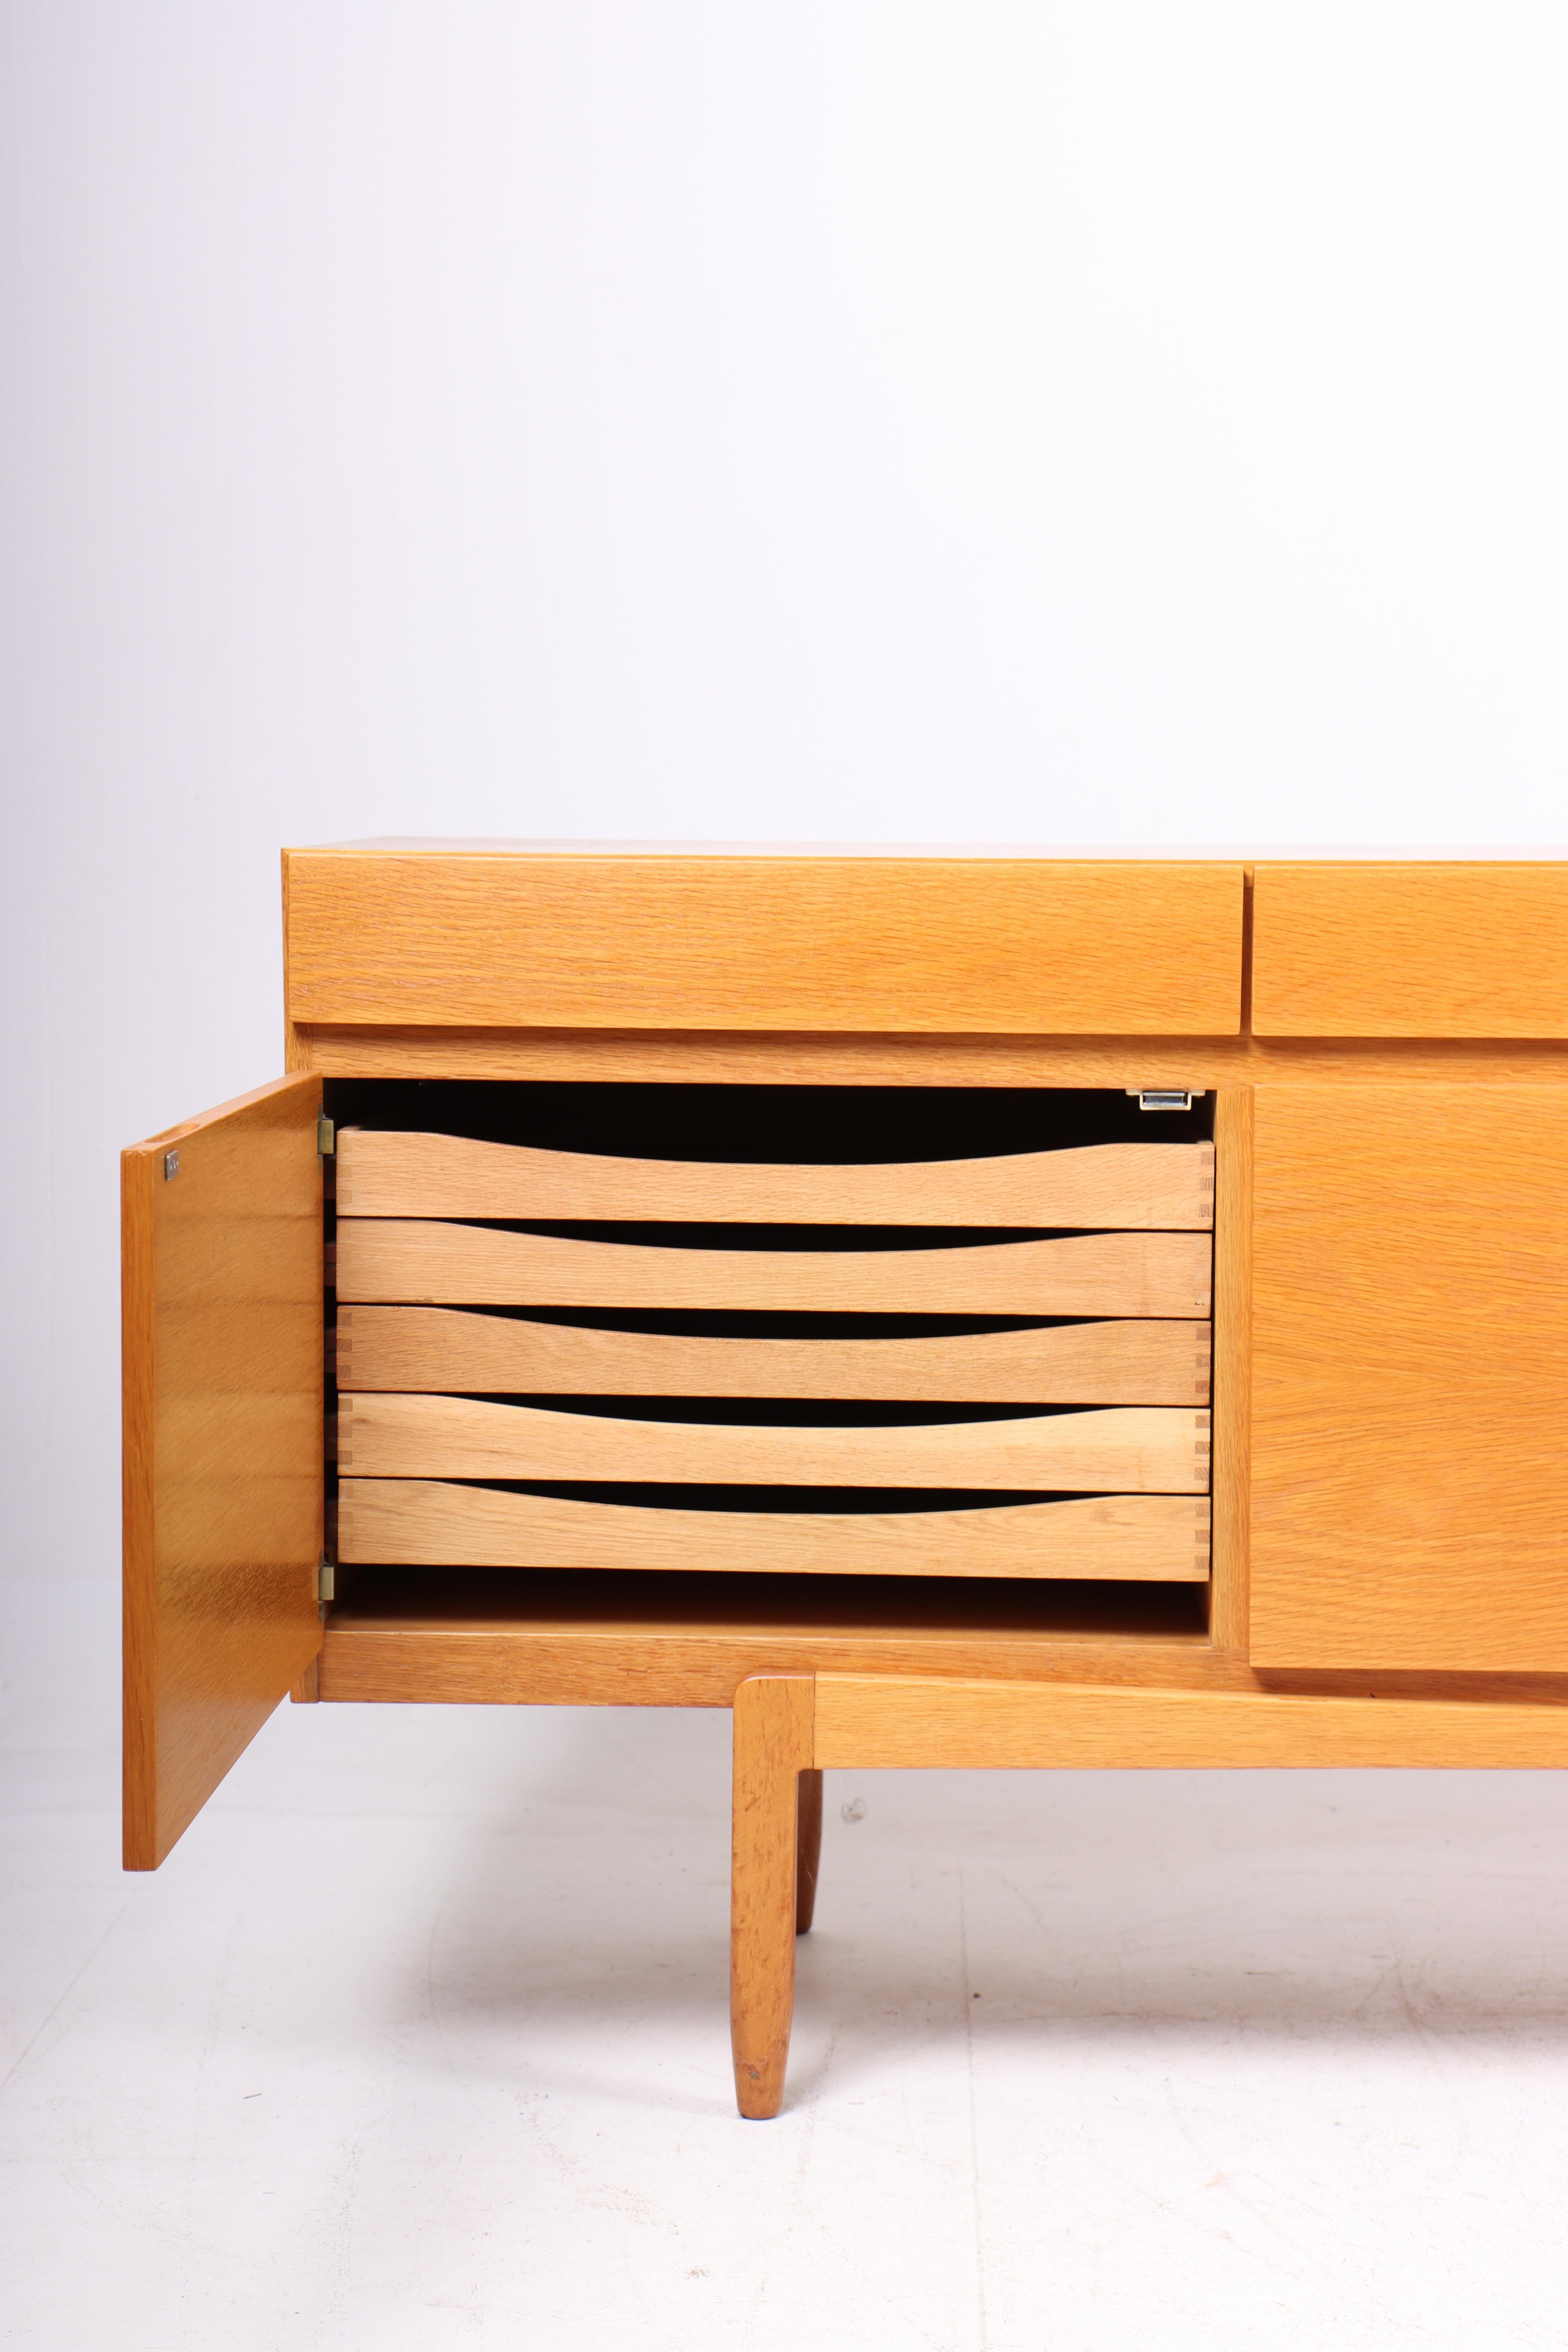 Scandinavian Modern Danish Midcentury Sideboard in Oak Designed by Ib Kofod-Larsen, 1960s For Sale